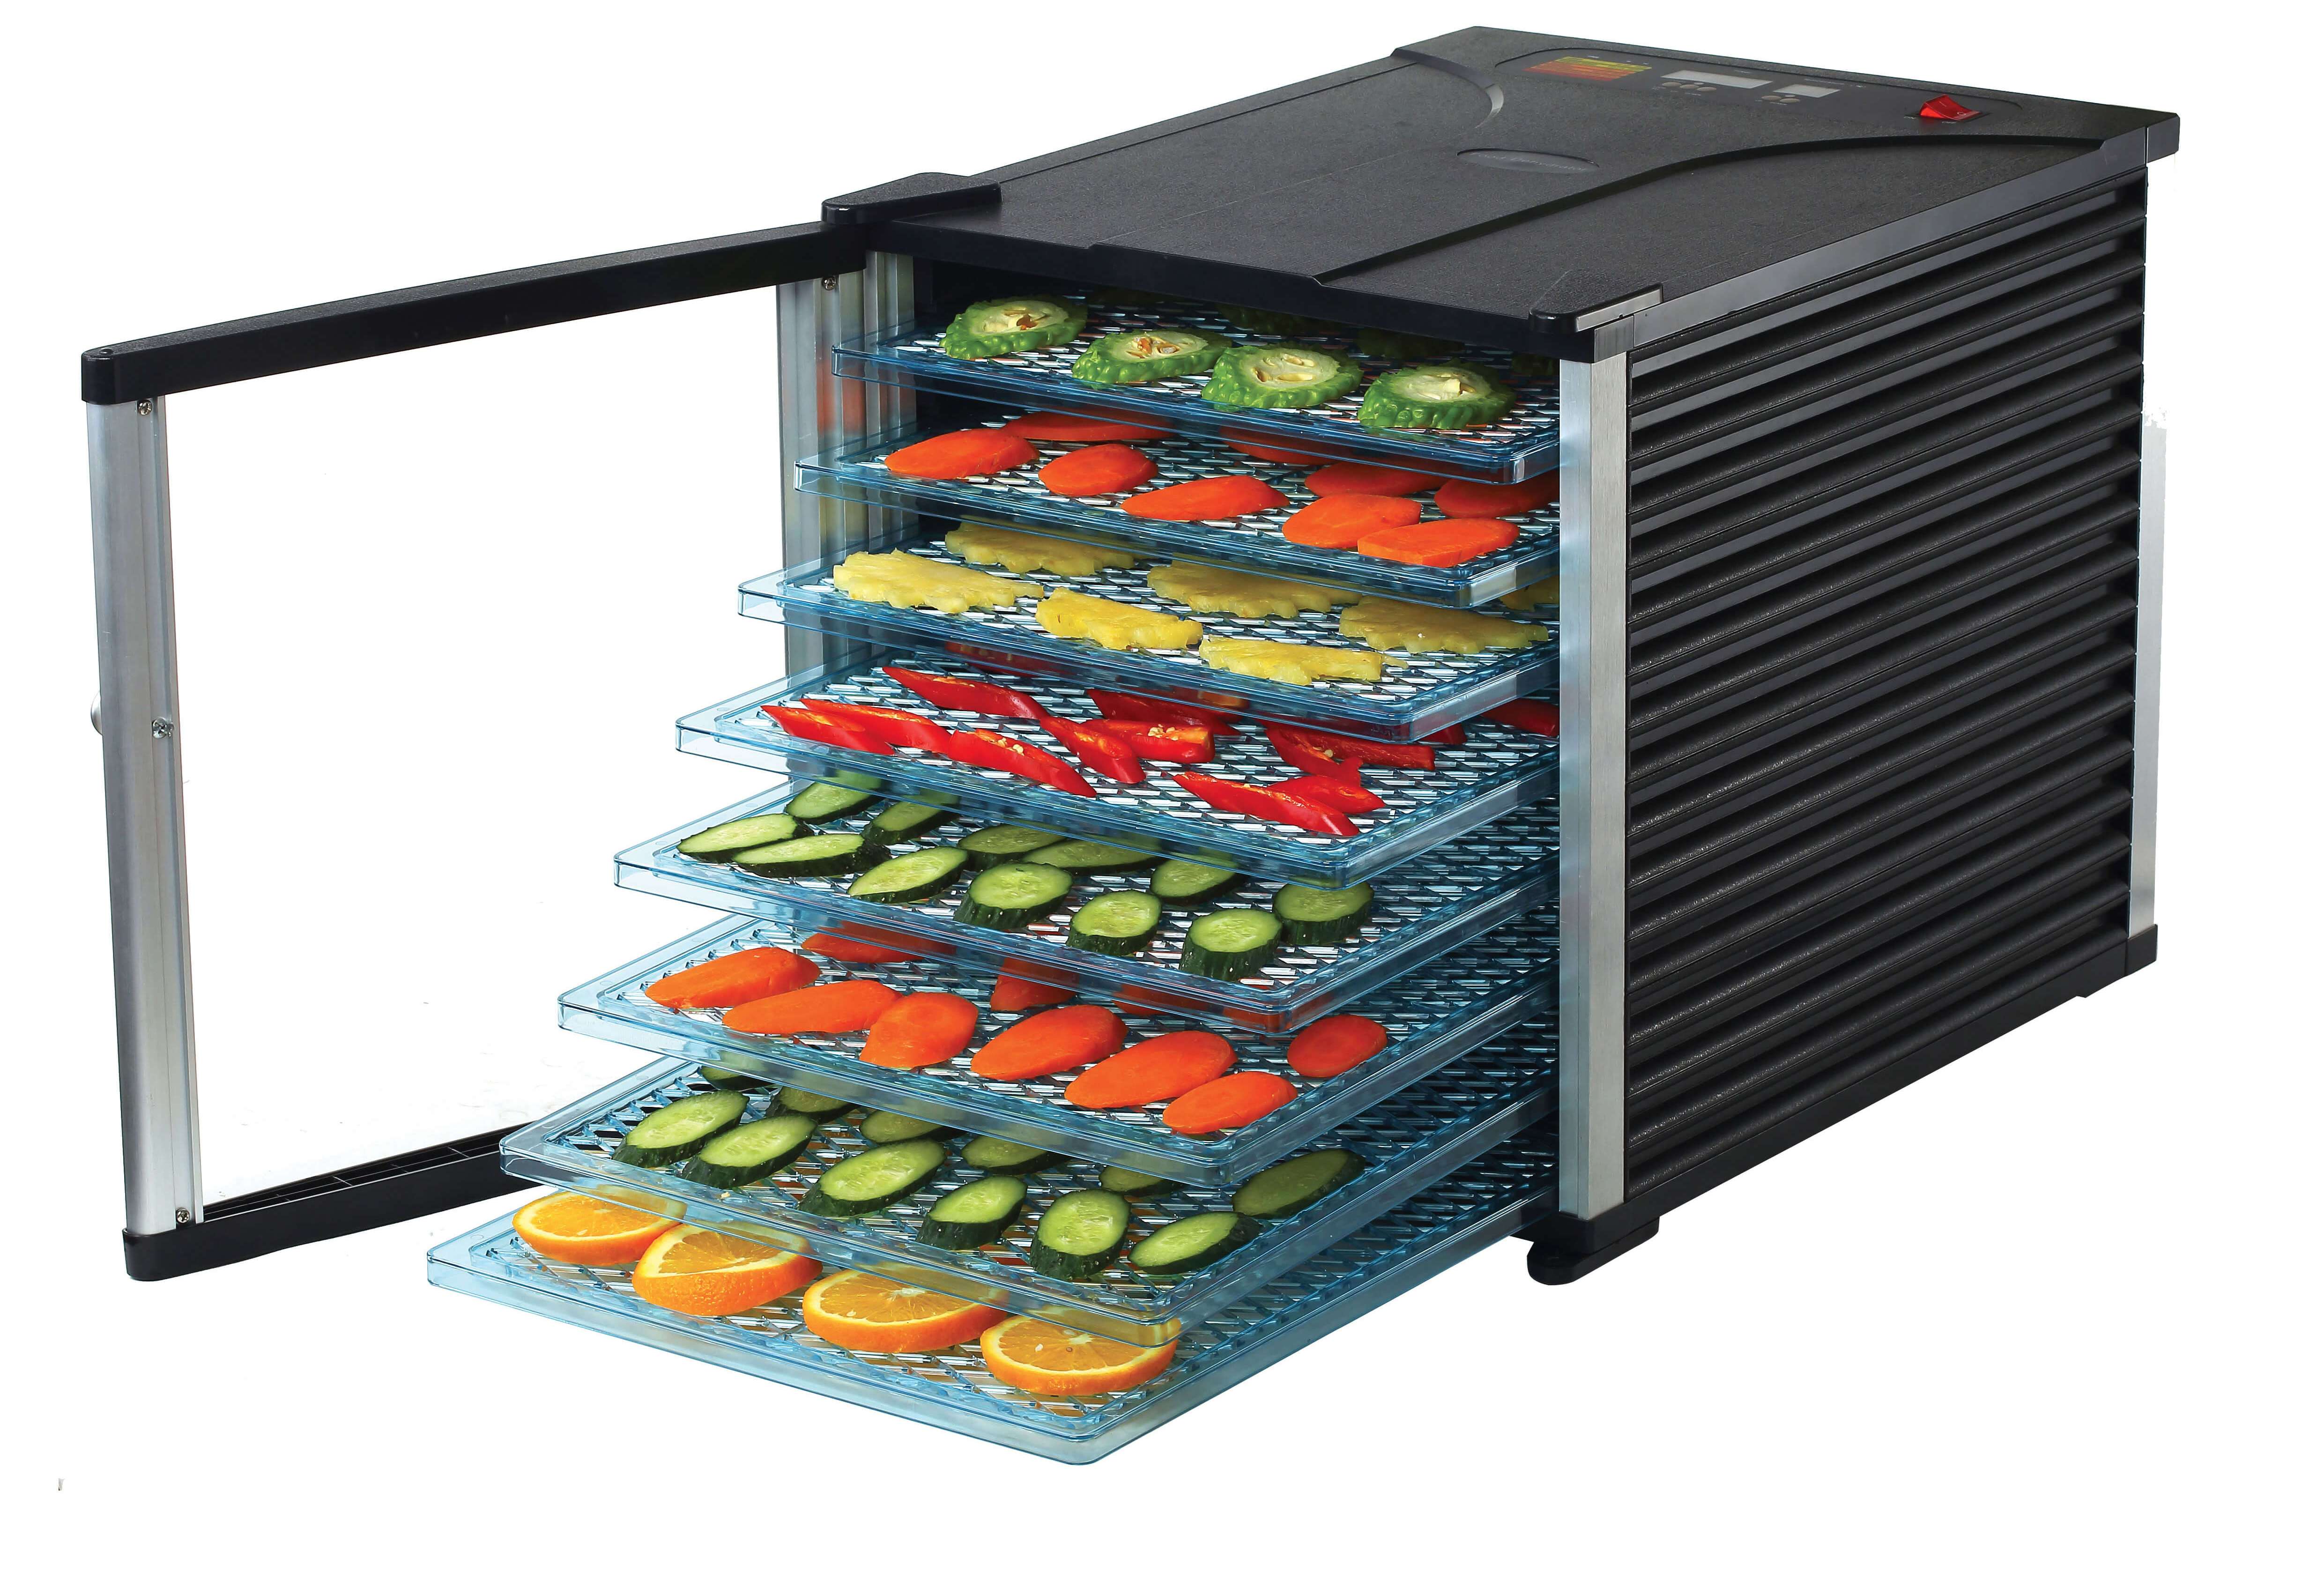 бытовой сушильный шкаф для овощей и фруктов